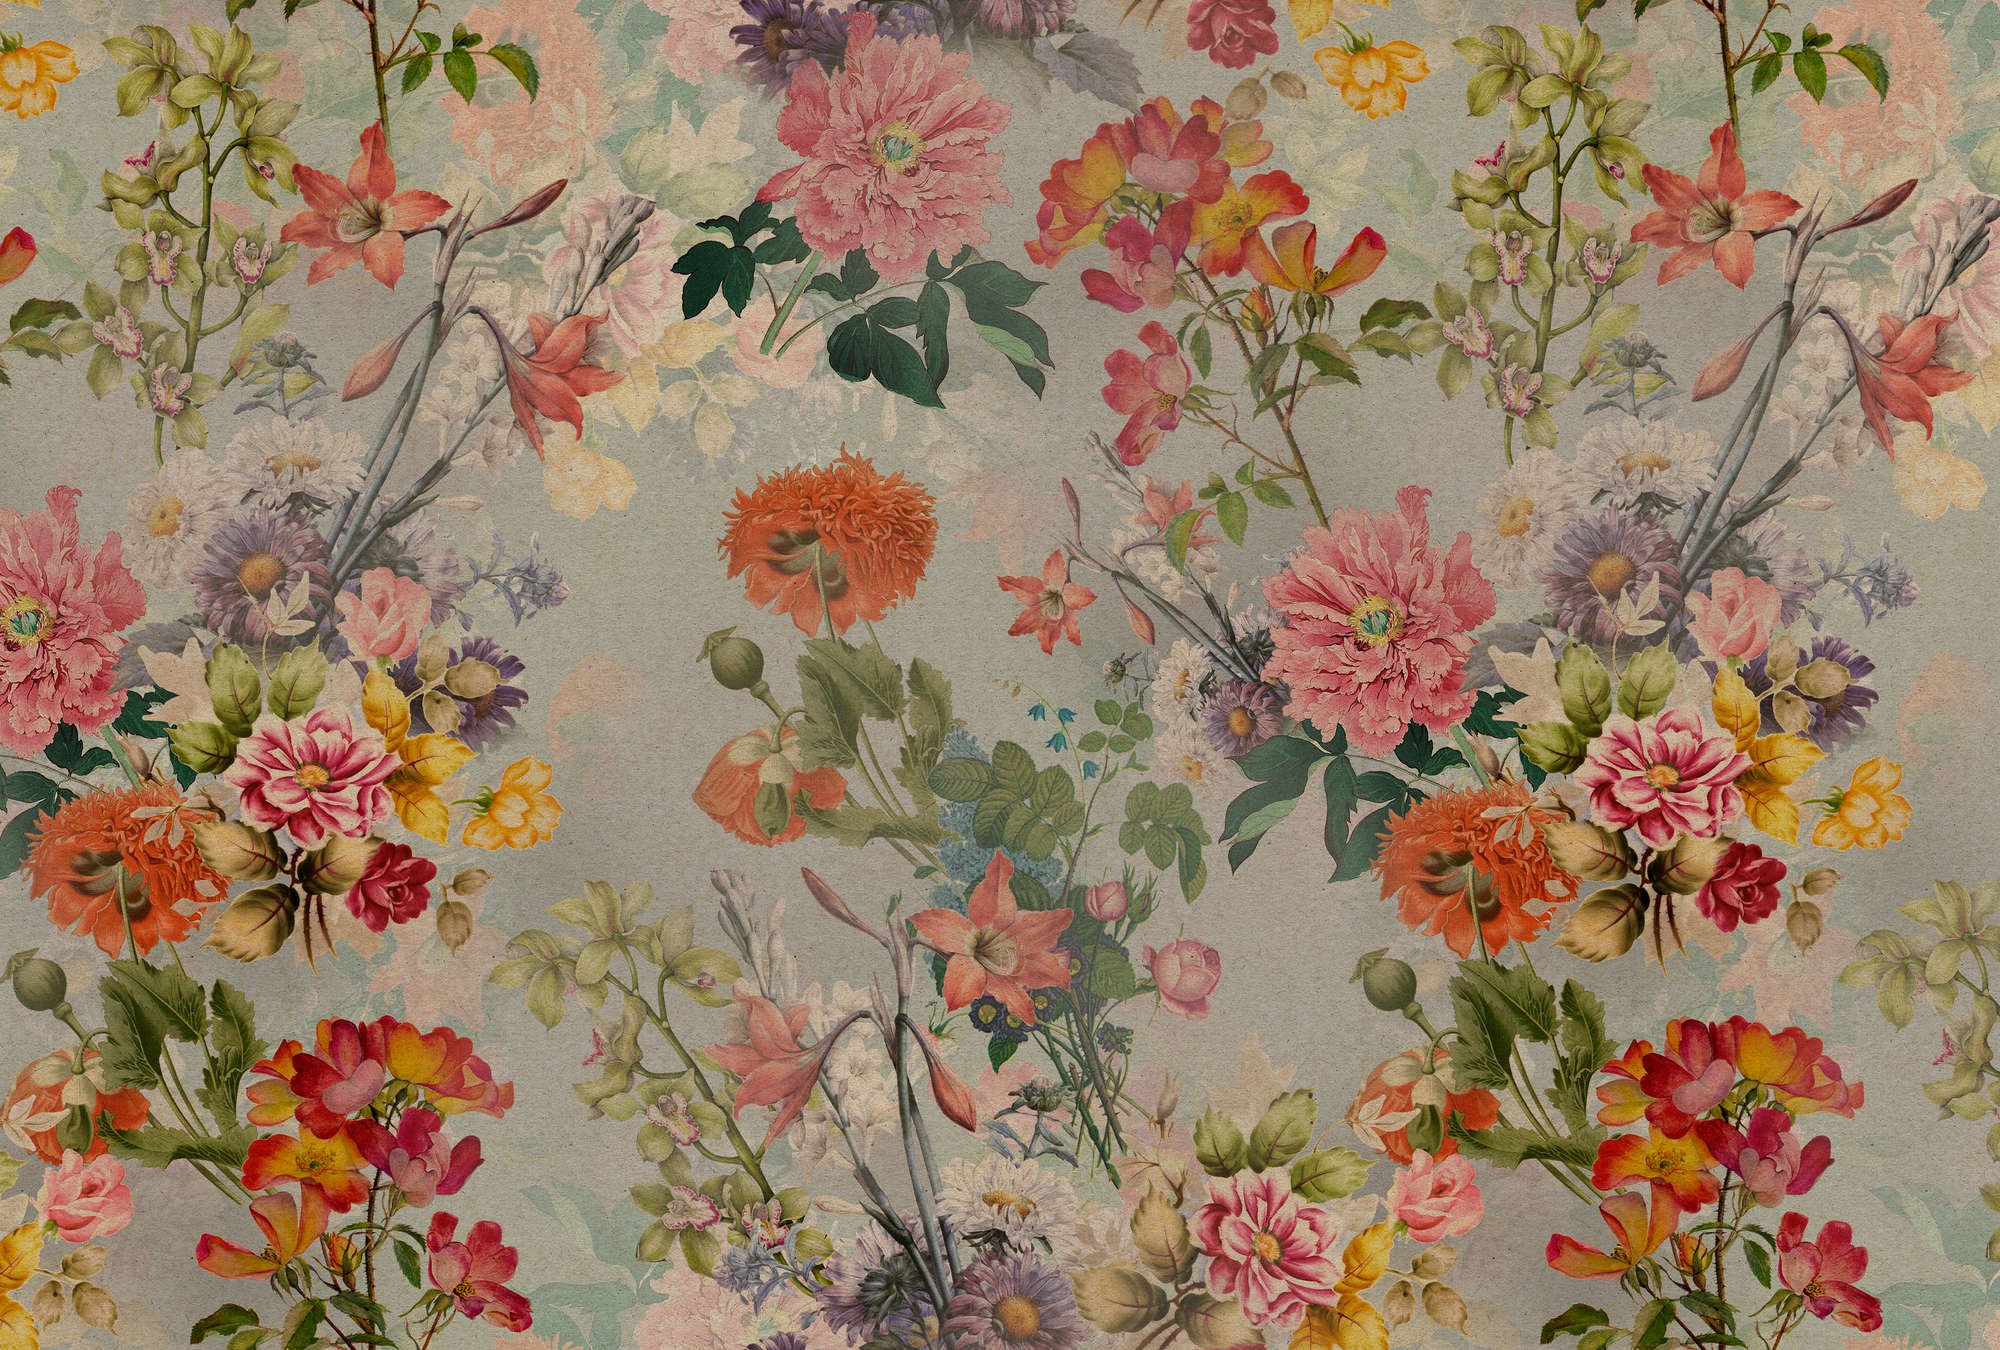             Amelies Home 1 - Vintage Bloemen Behang in Romantische Landelijke Stijl
        